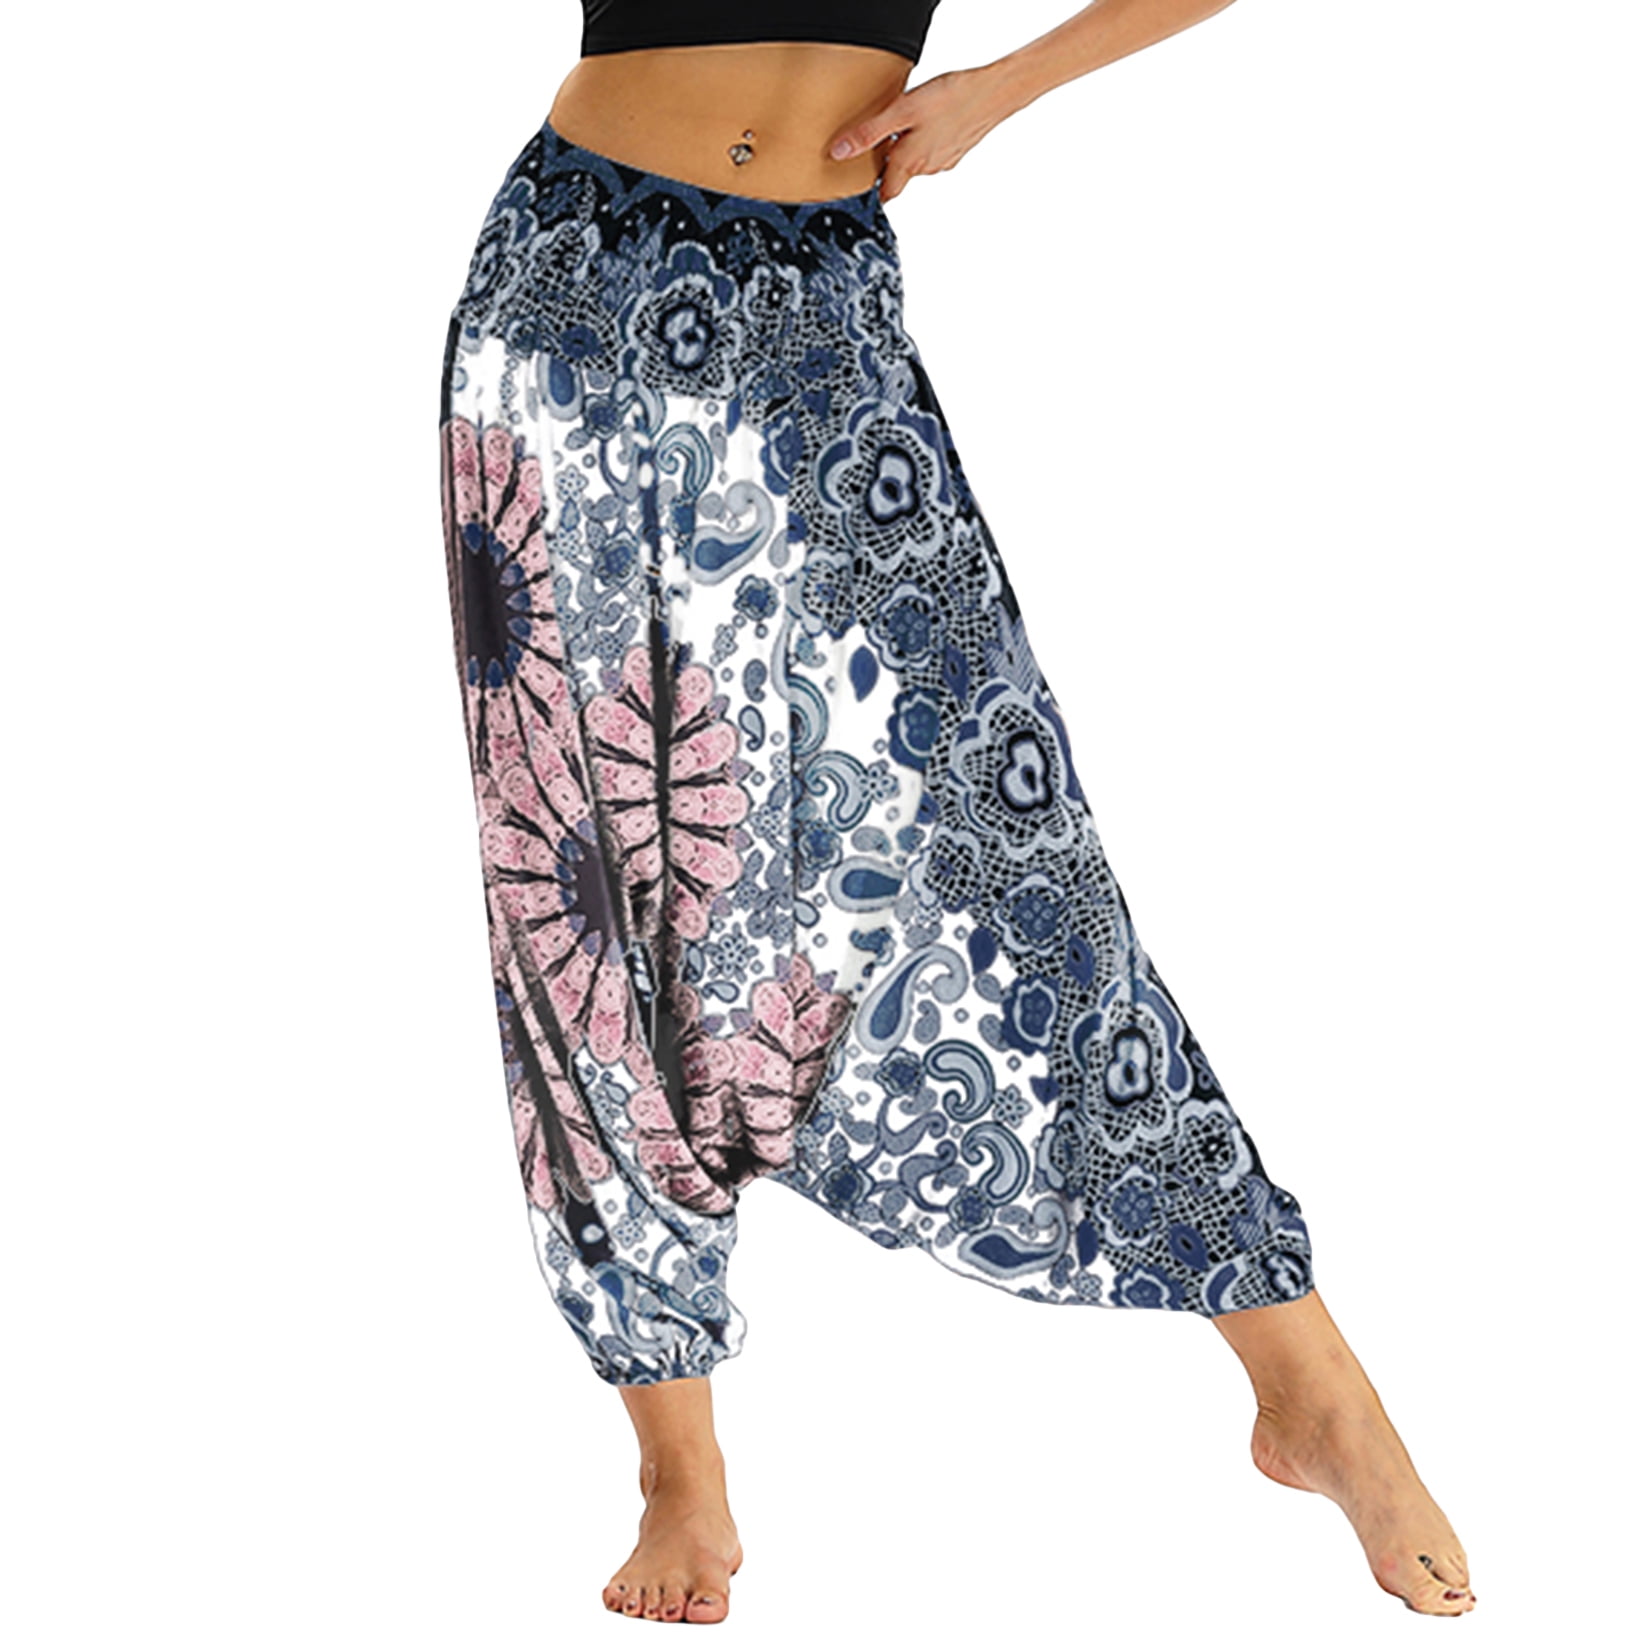 Women's Elephant Hippie Boho Yoga Harem Pants with Elastic Waist and Pockets